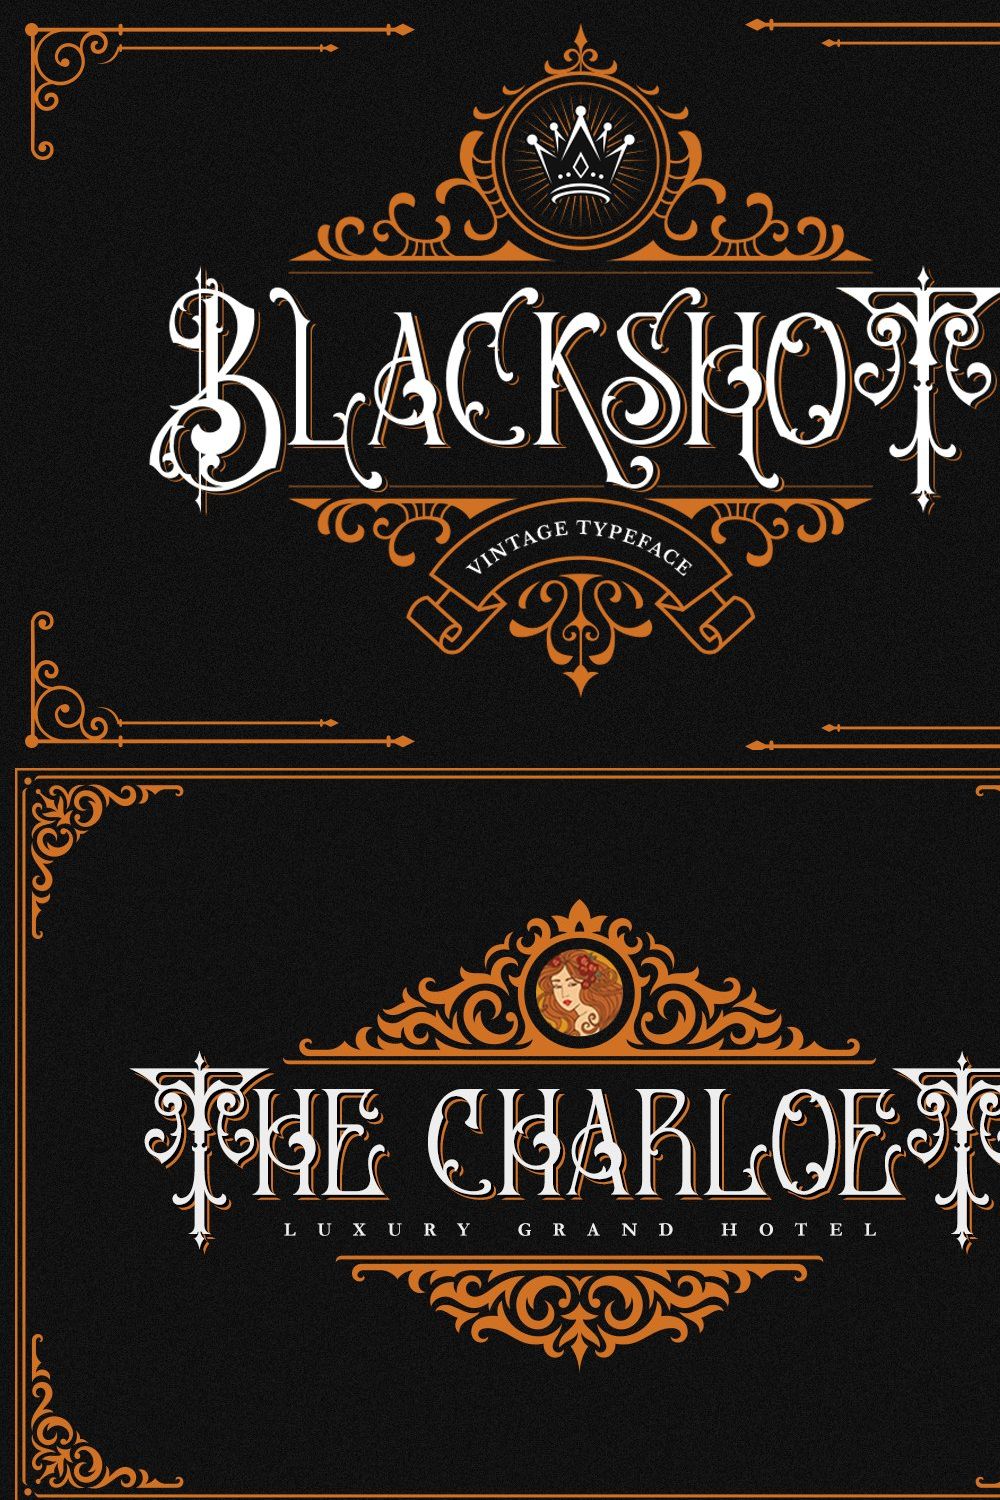 Blackshot - Blackletter Font pinterest preview image.